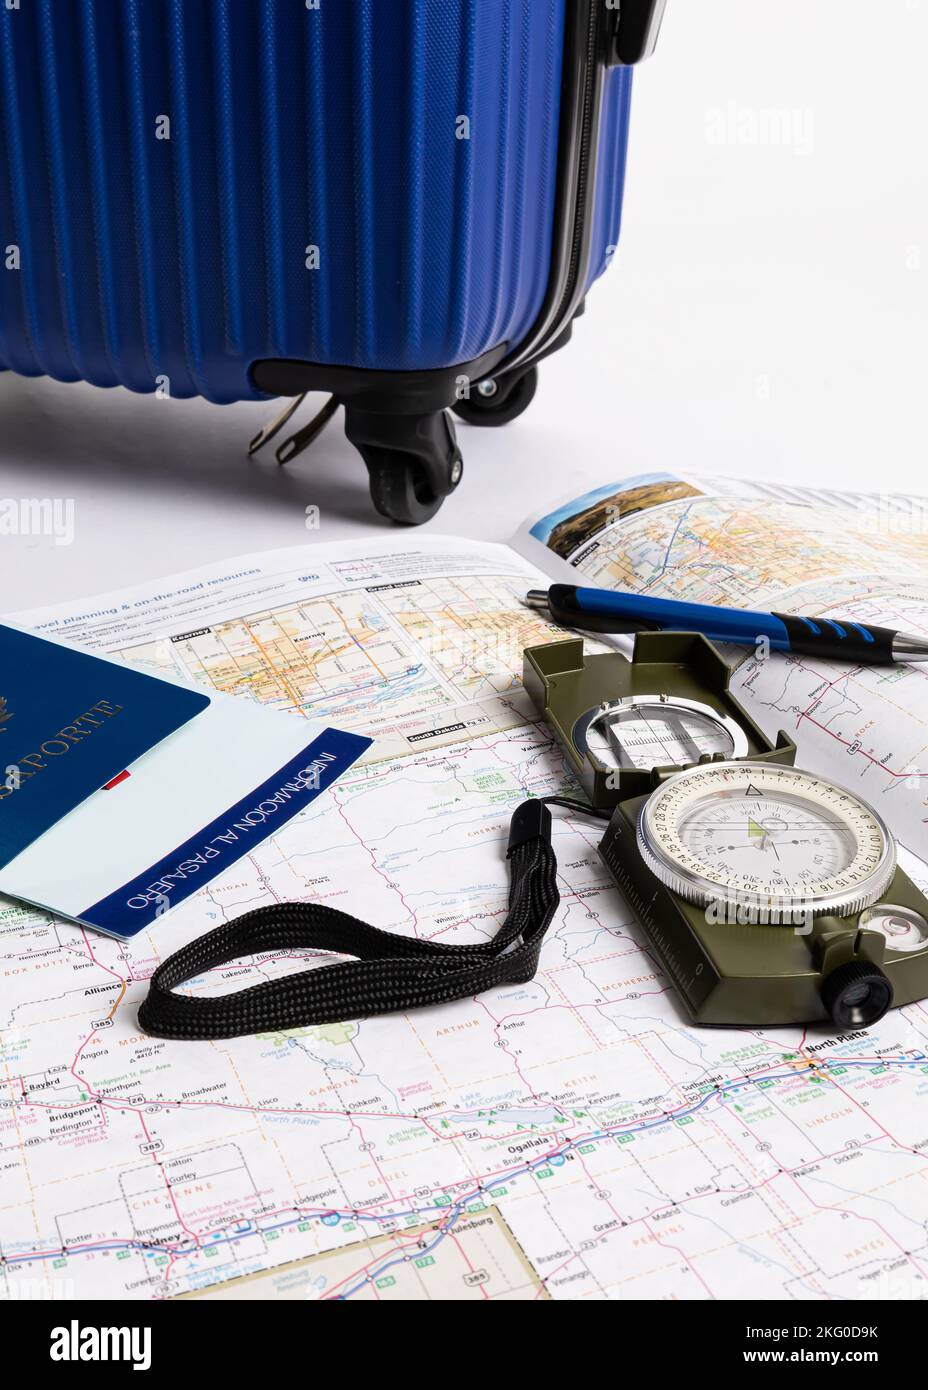 Accanto alle mappe, alla bussola e alla penna viene visualizzata una valigetta da viaggio blu, il tutto su sfondo bianco Foto Stock